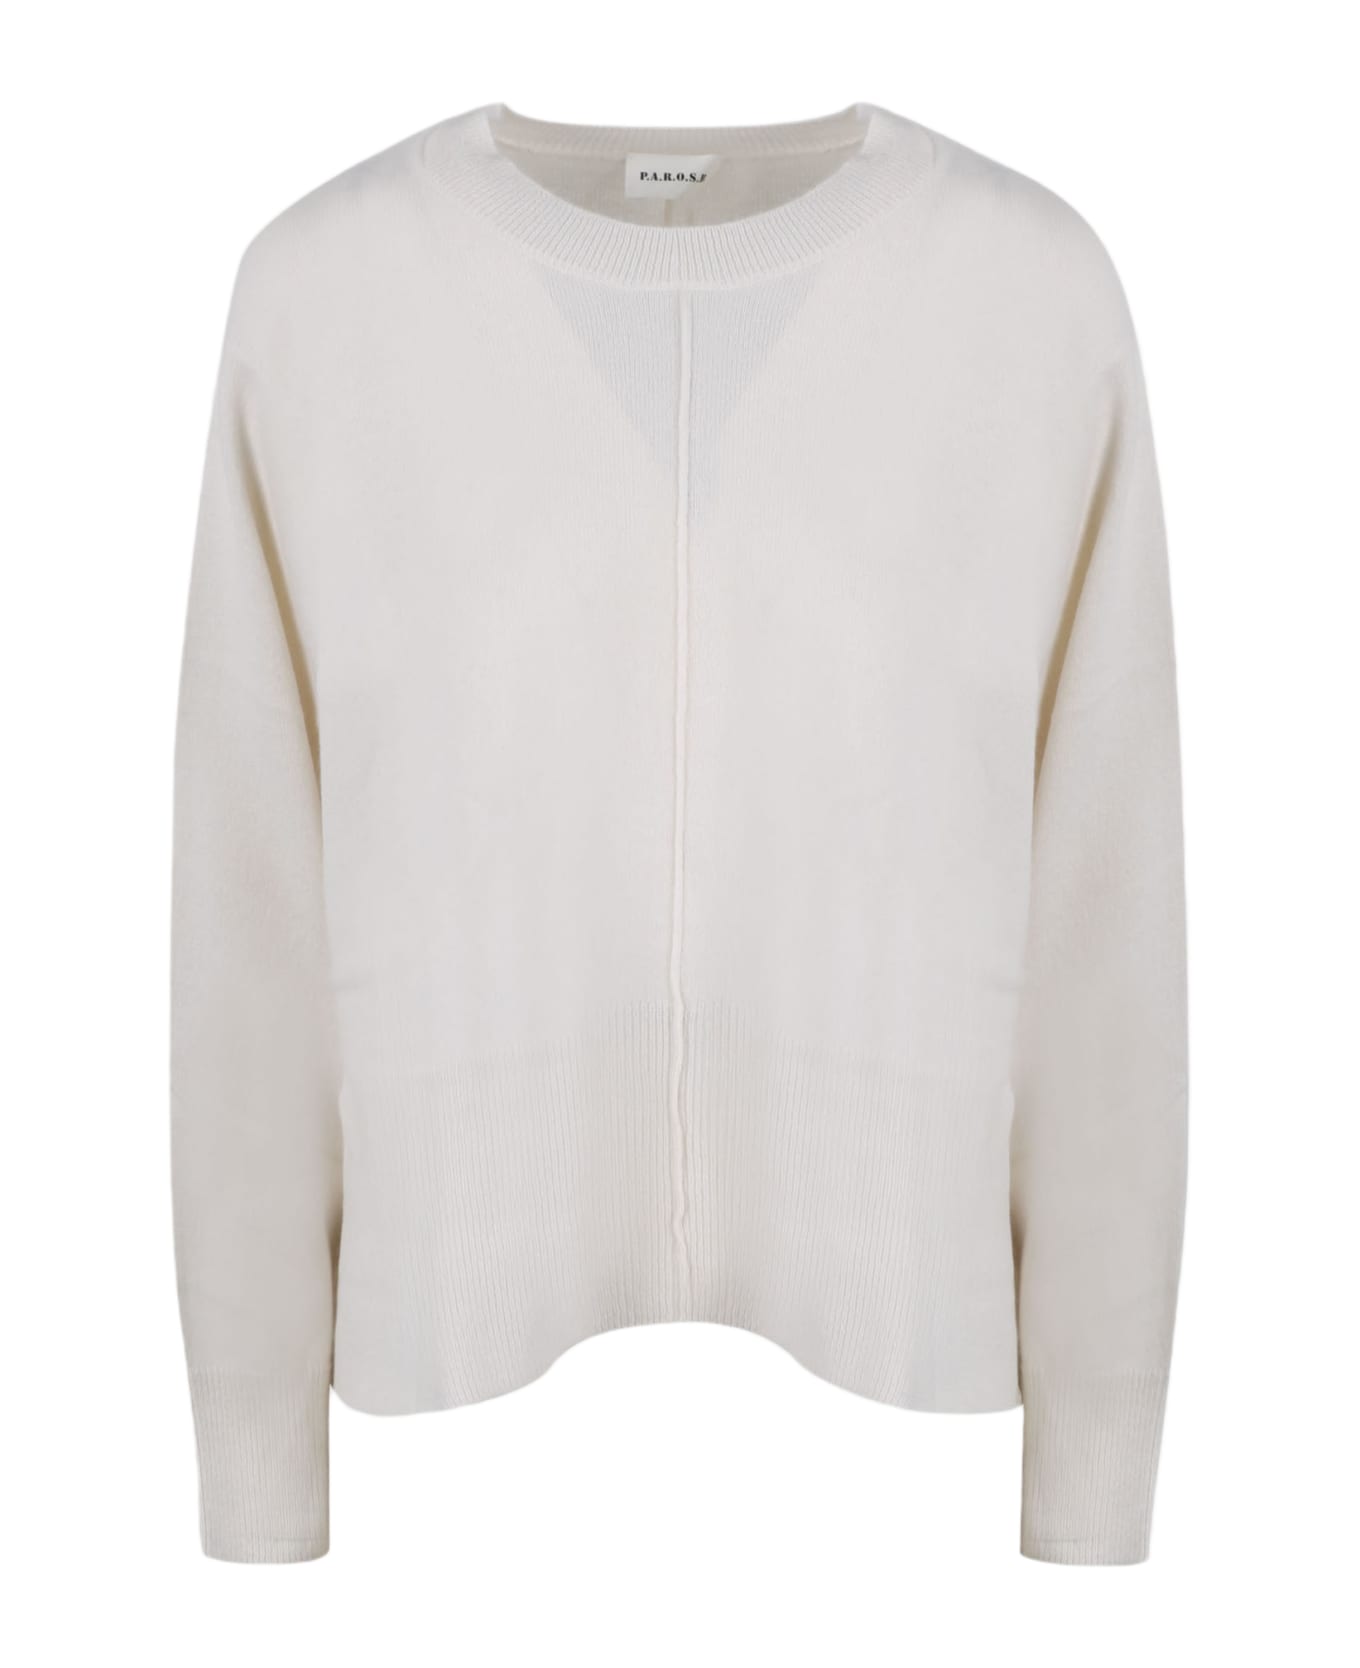 Parosh Wam Sweater - White